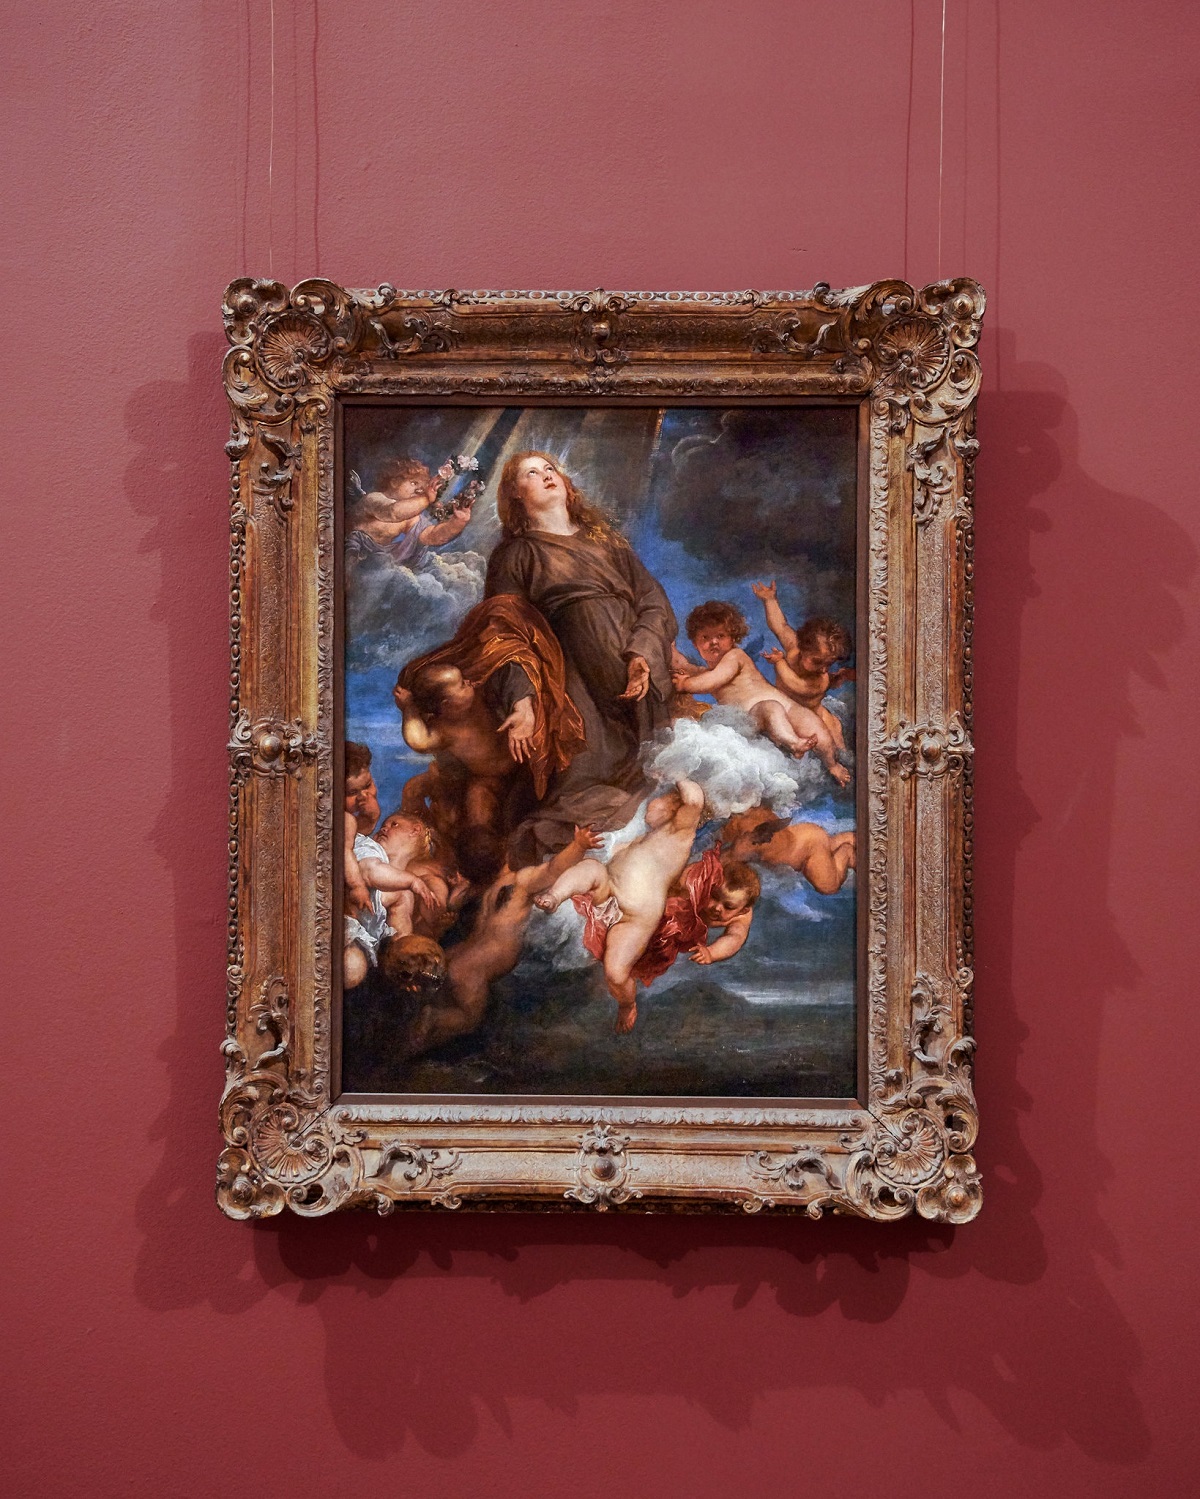 La "Santuzza" in gloria, intercede per la fine della peste a Palermo  dipinta da Antoon van Dyck durante la sua quarantena nella città nella tarda estate del 1624  e conservata al Metropolitan Museum. Di recente il New York Times ne ha censurato lo spostamento dalla sala dove era esposta.